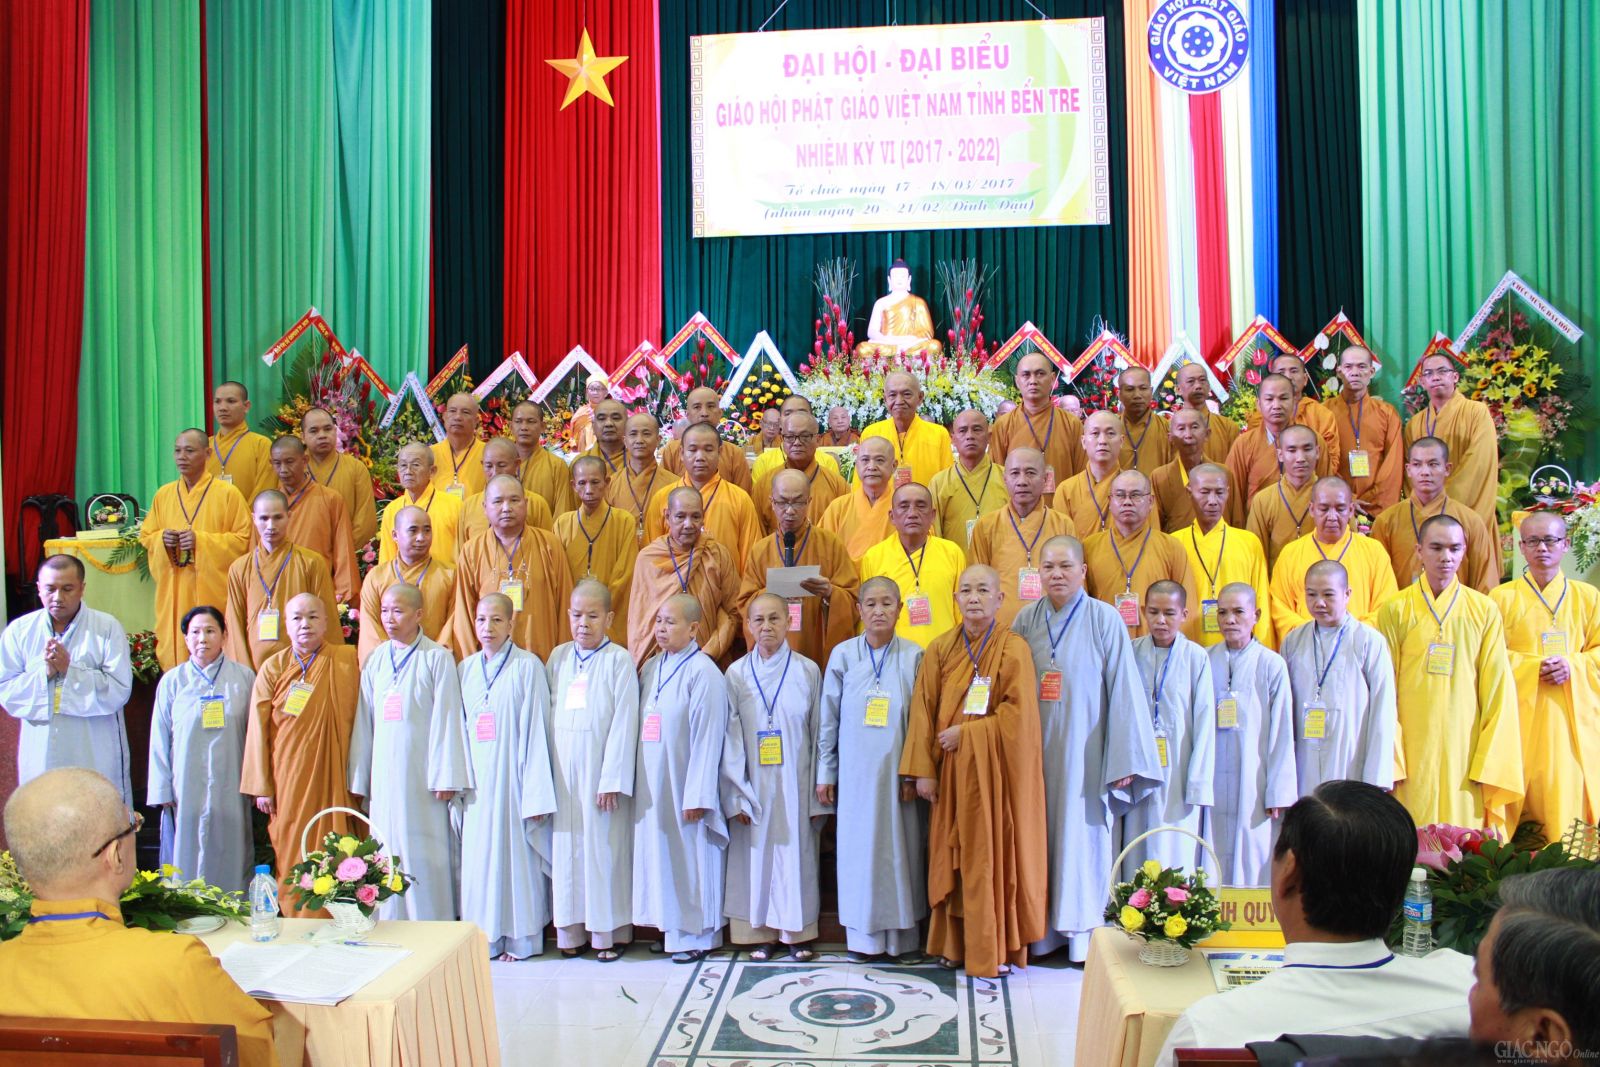 Bến Tre: Đại Hội Đại Biểu Phật Giáo Lần thứ VI (2017-2022)